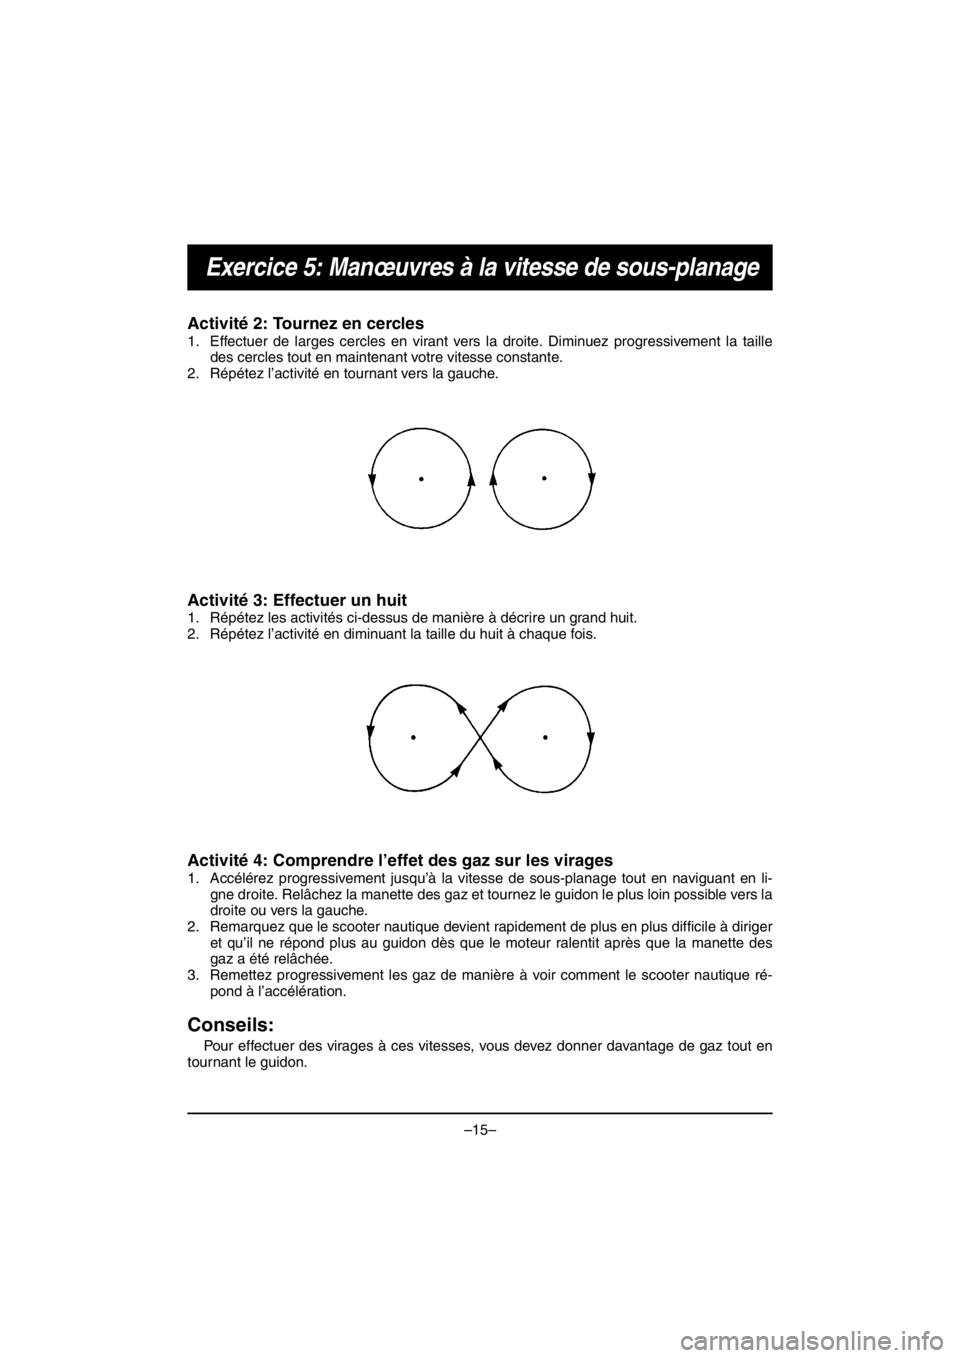 YAMAHA VX DELUXE 2016  Notices Demploi (in French) –15–
Exercice 5: Manœuvres à la vitesse de sous-planage
Activité 2: Tournez en cercles 
1. Effectuer de larges cercles en virant vers la droite. Diminuez progressivement la taille
des cercles t